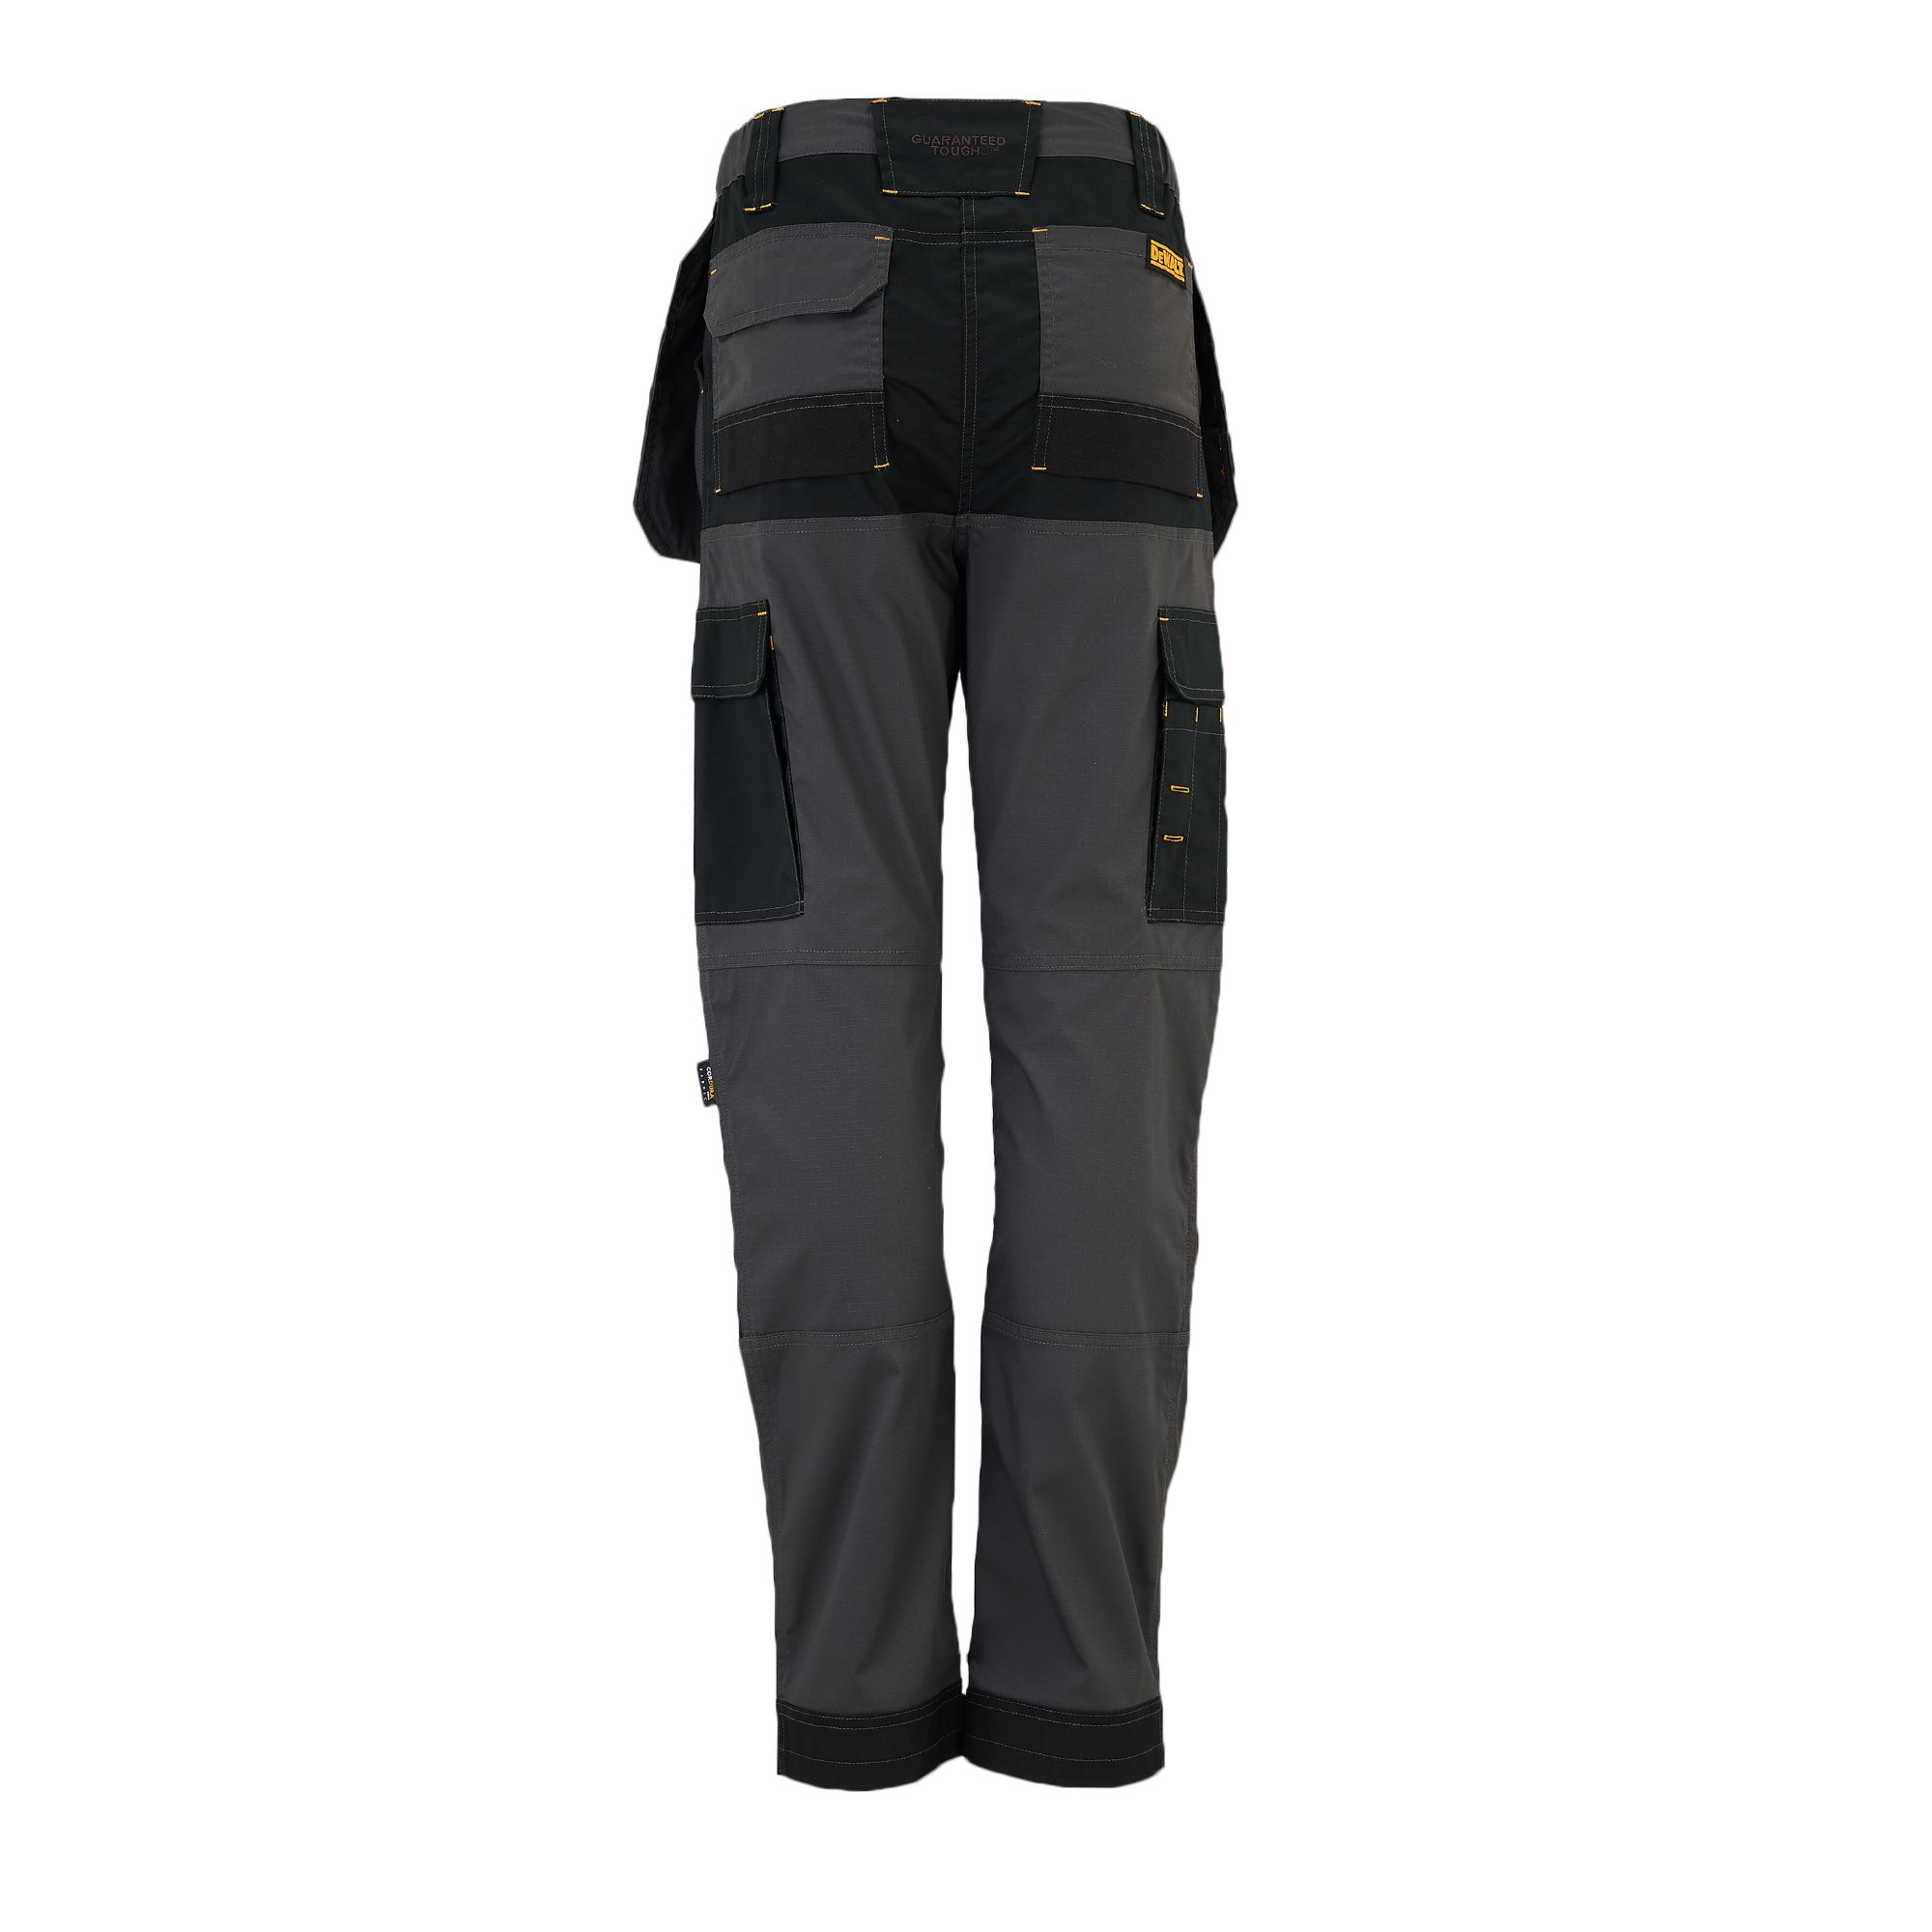 DeWalt Roseville Black & grey Women's Trousers, Size 16 L29"